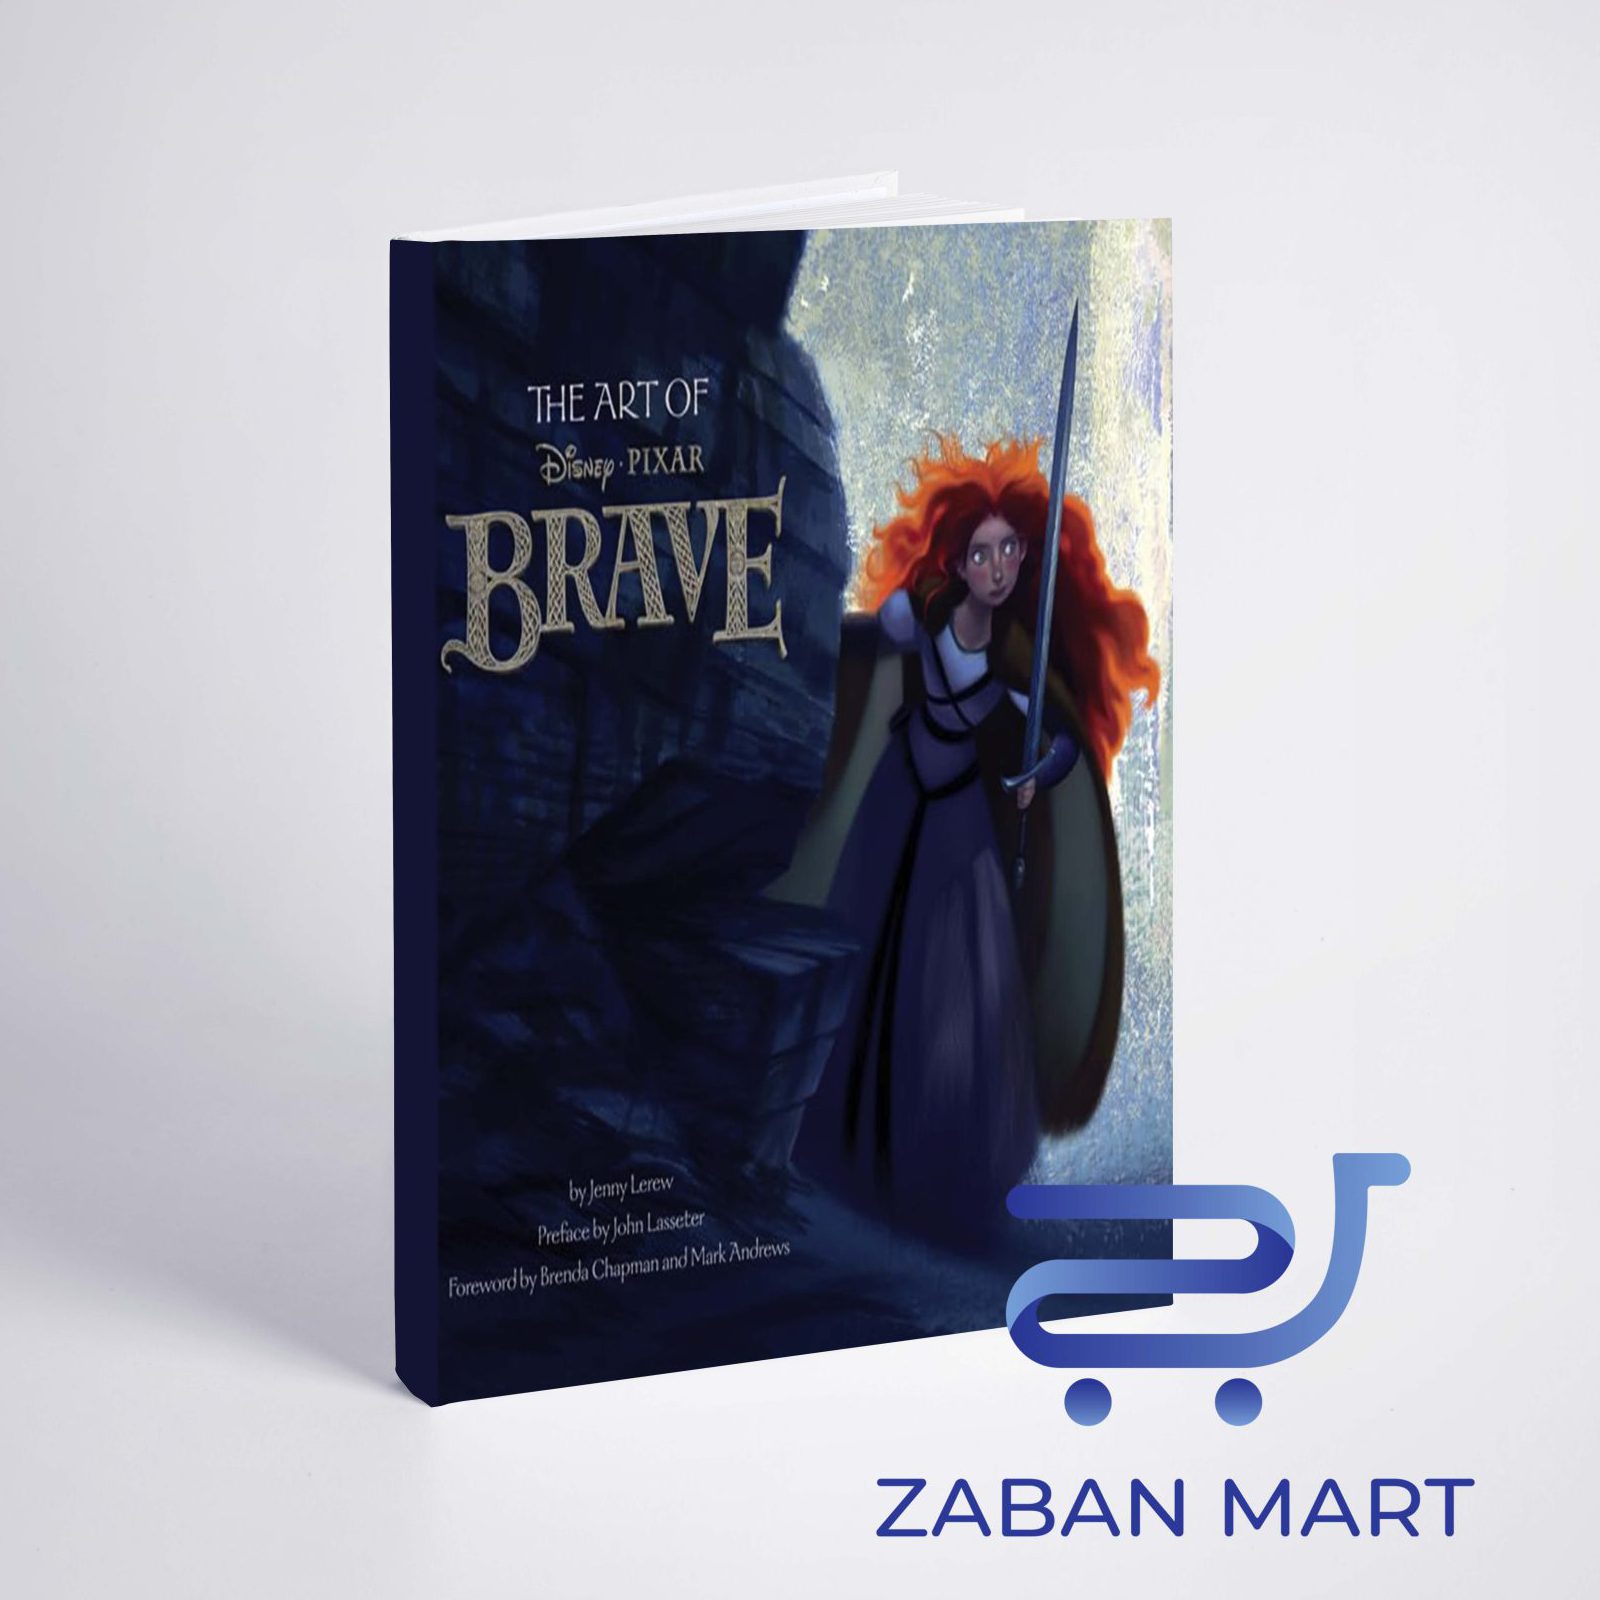 خرید آرت بوک شجاع | The Art of Brave از فروشگاه اینترتی زبان مارت